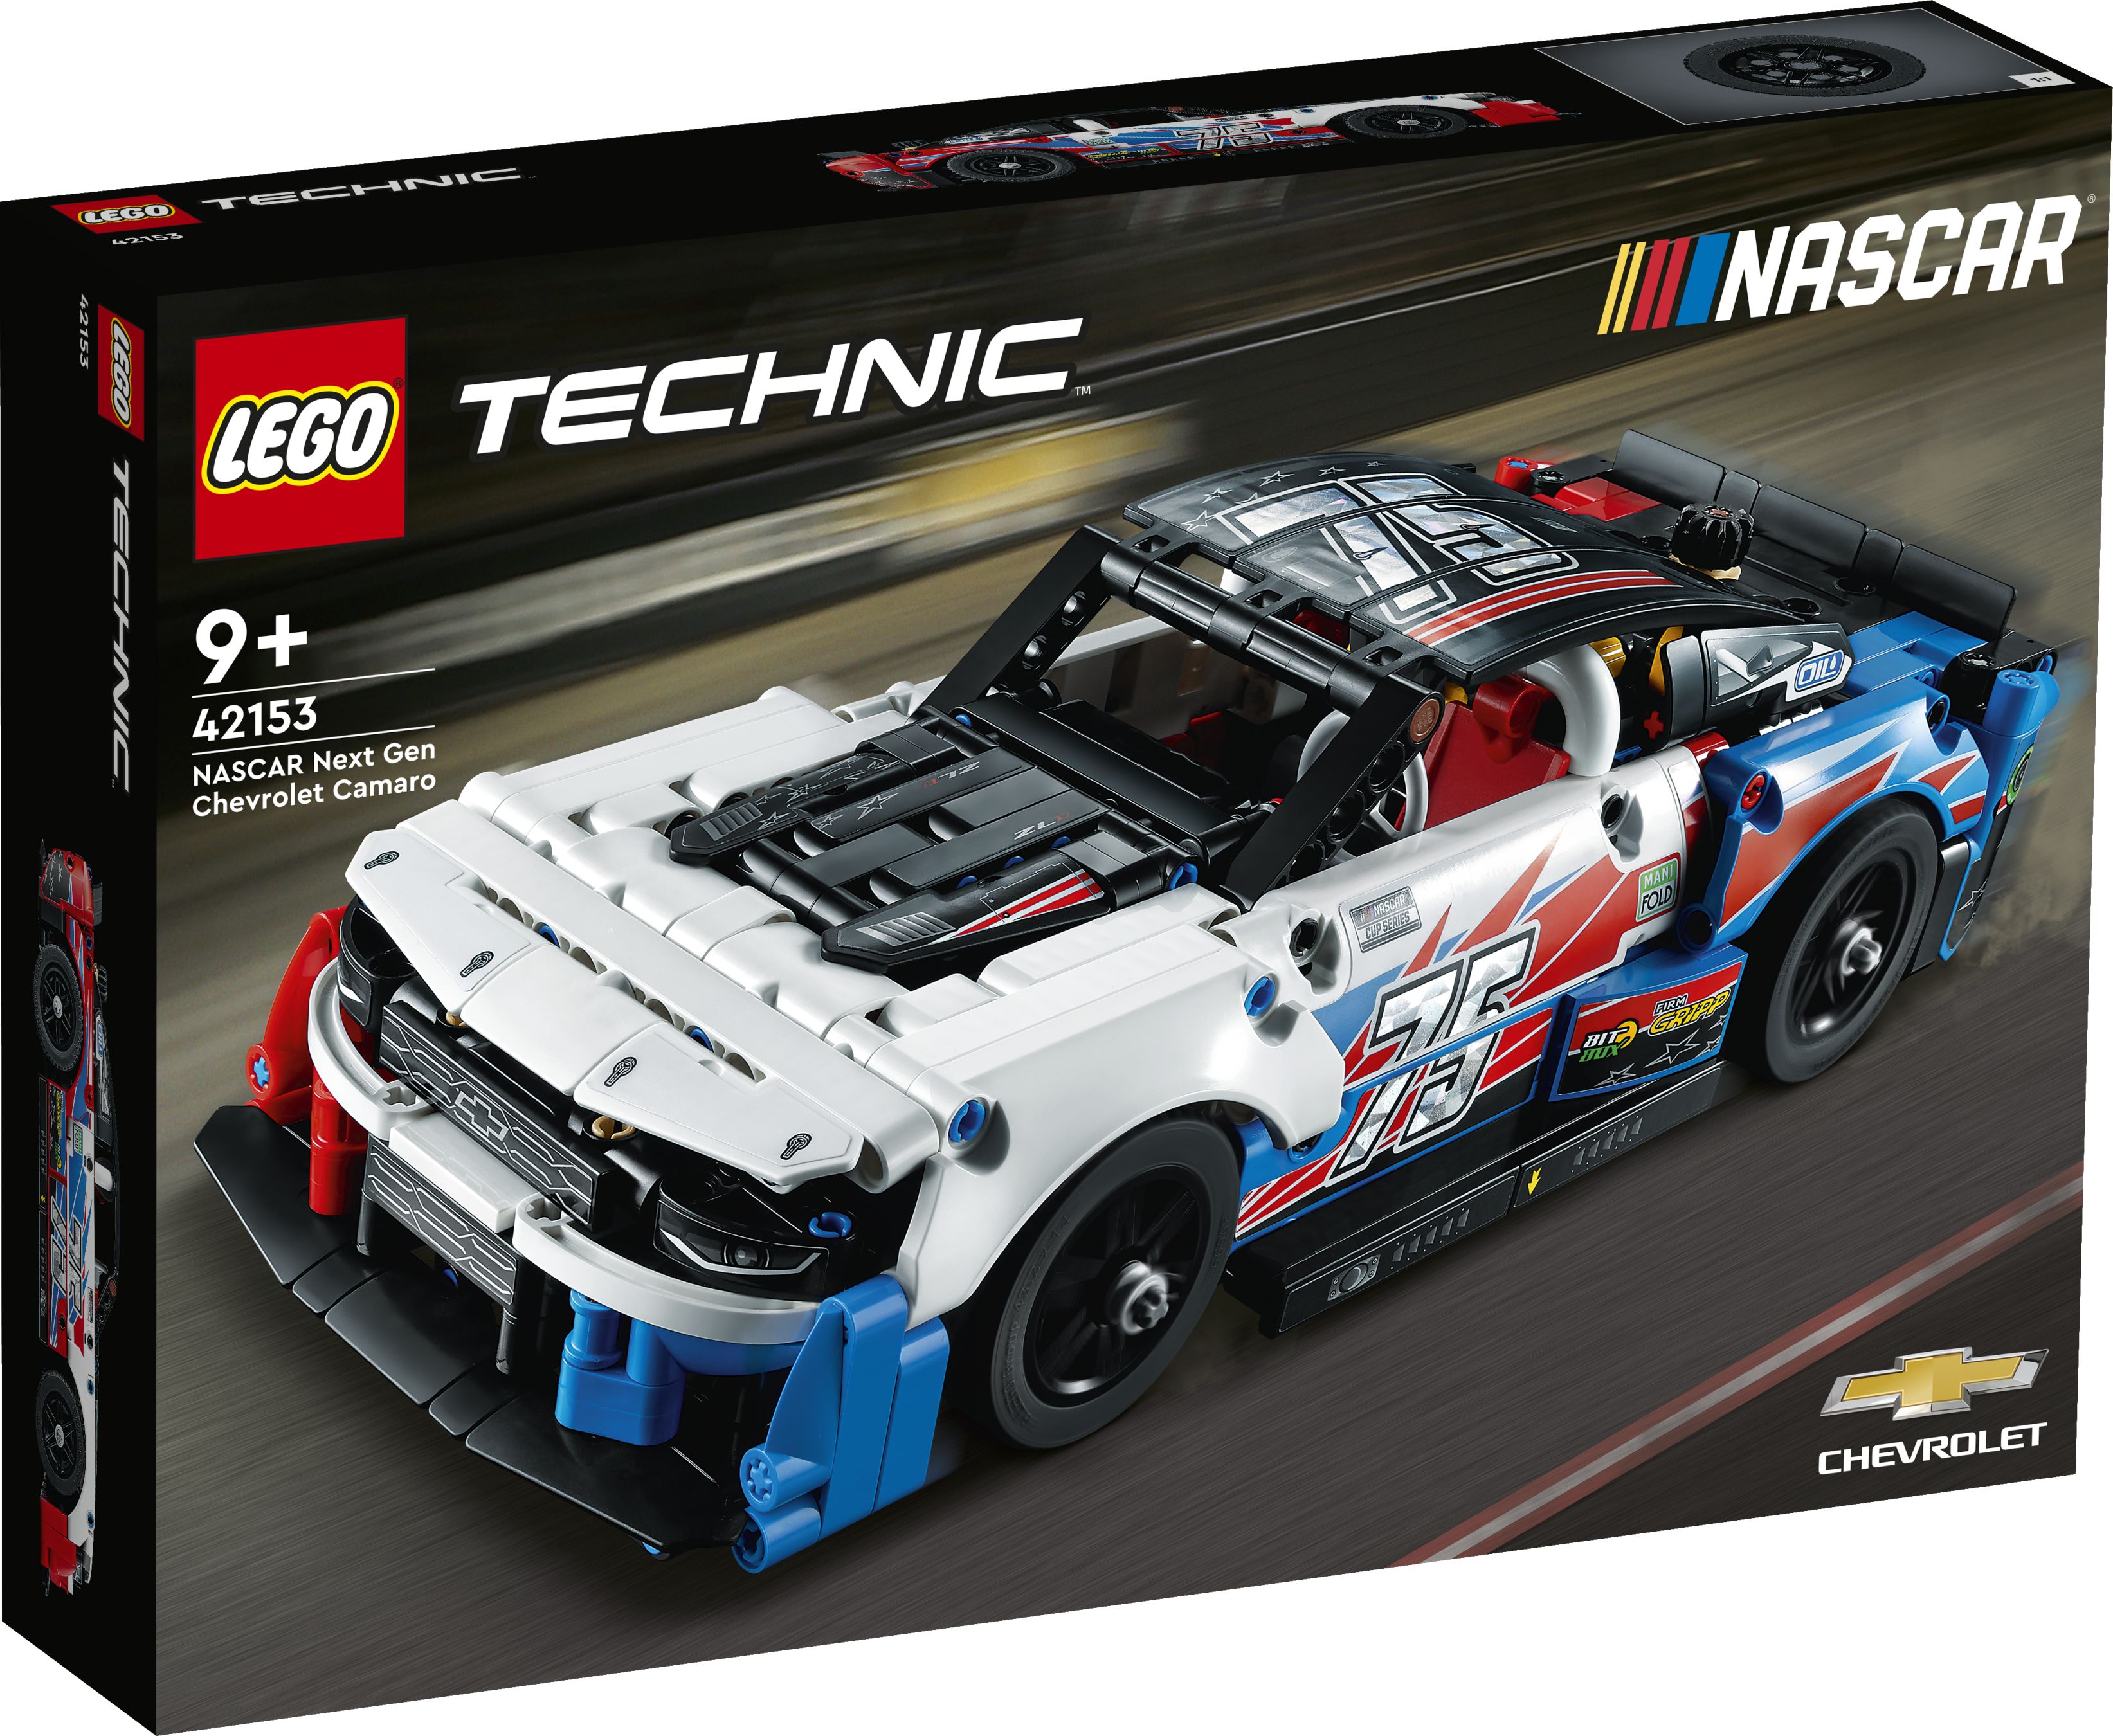 LEGO Technic 42153 NASCAR Next Gen Chevrolet Camaro ZL1 LEGO_42153_Box1_v29.jpg